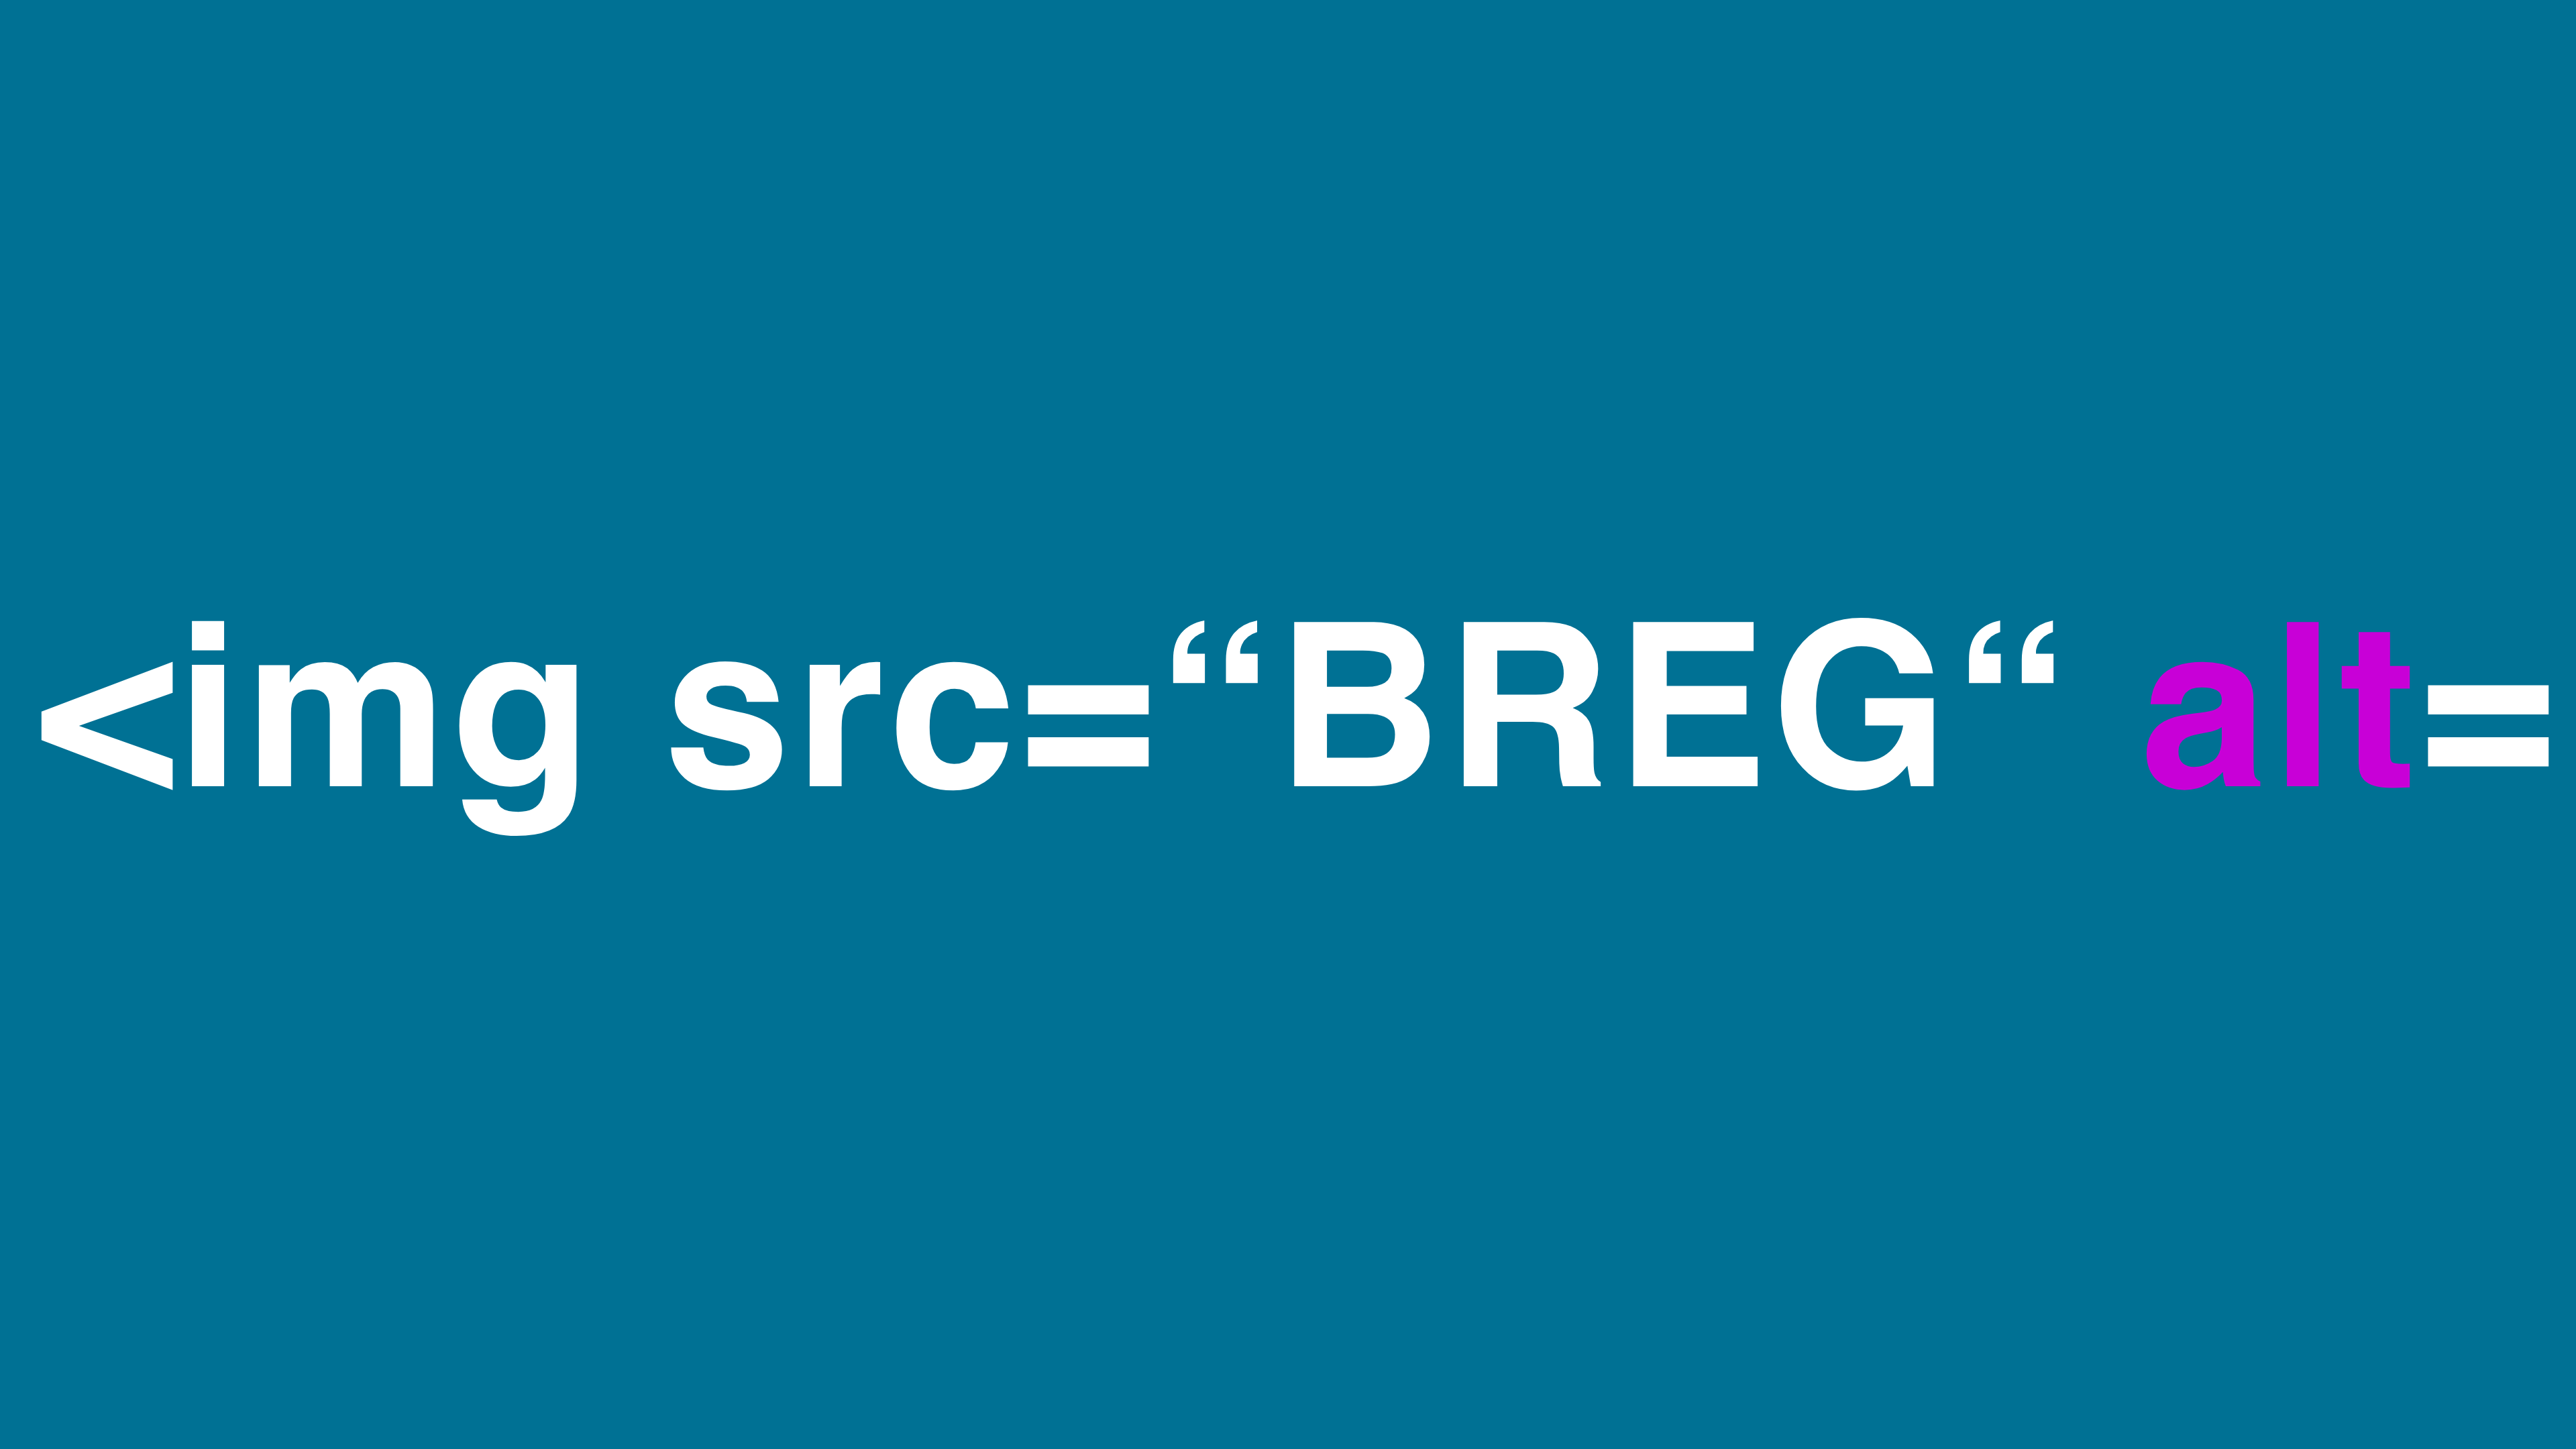 Ausschnitt aus einer Quellcode Zeile: <img src=“BREG“ alt=. alt ist farbig markiert.